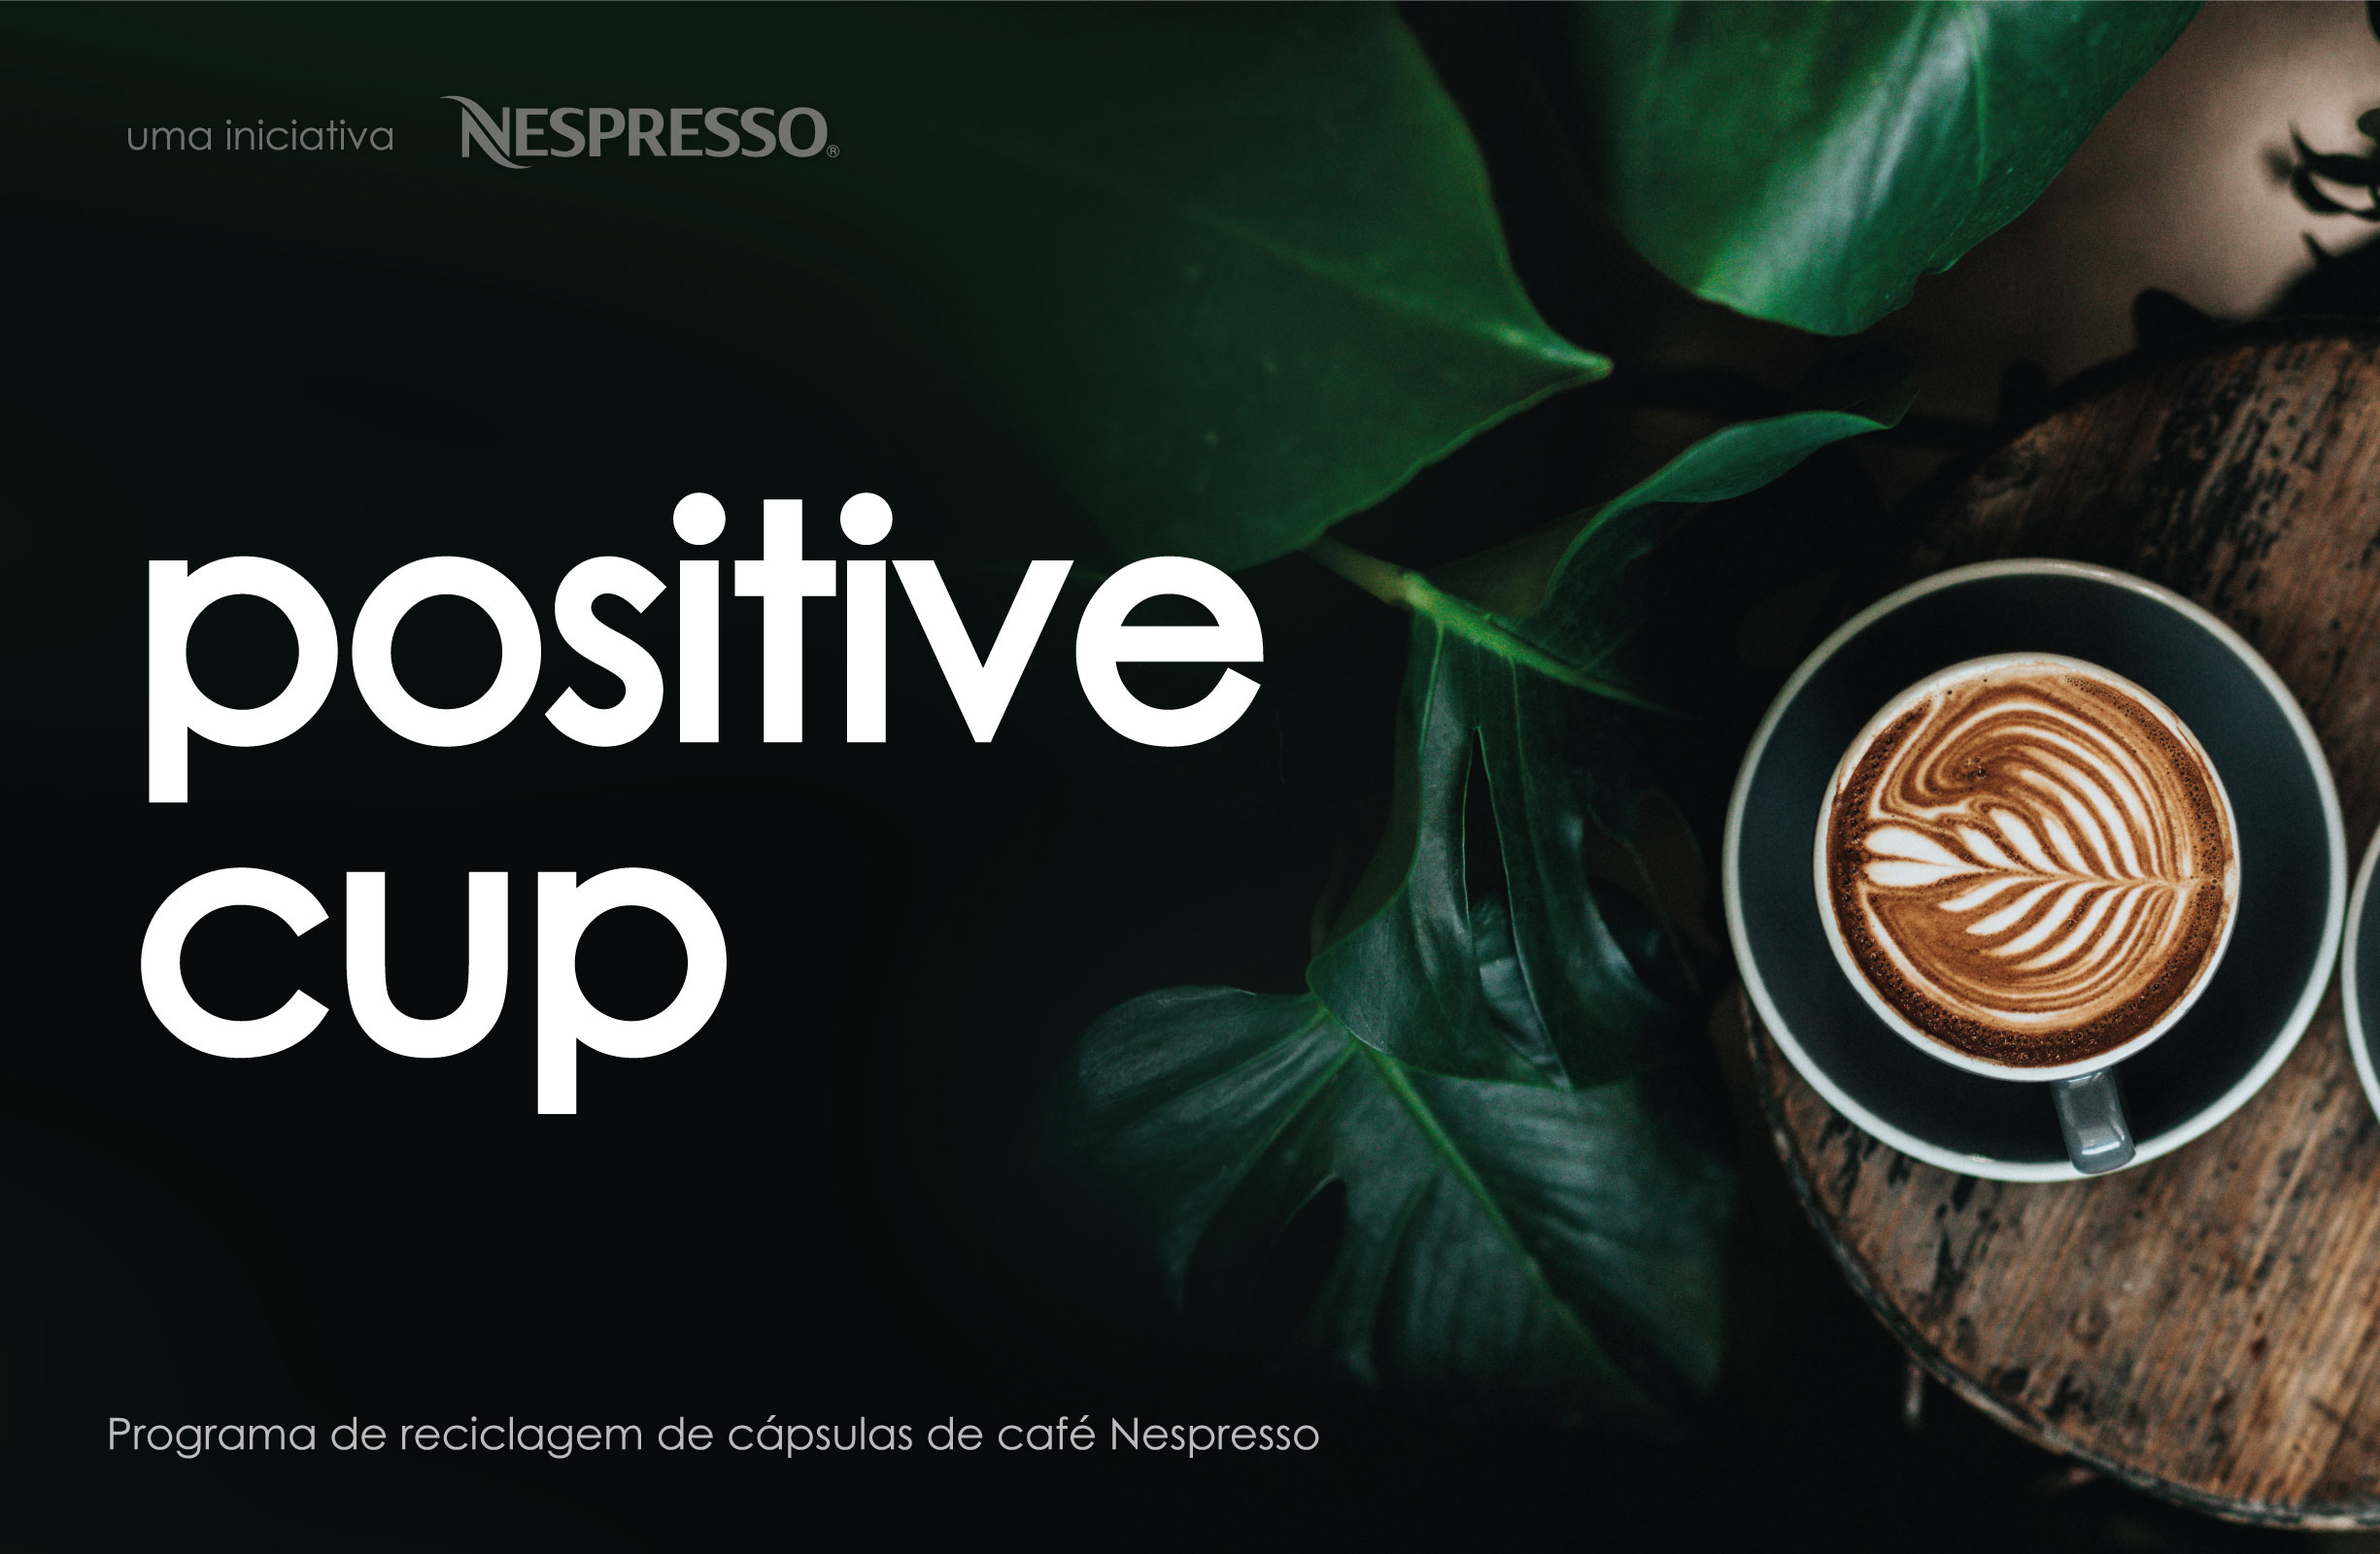 "The Positive Cup" com Nespresso®